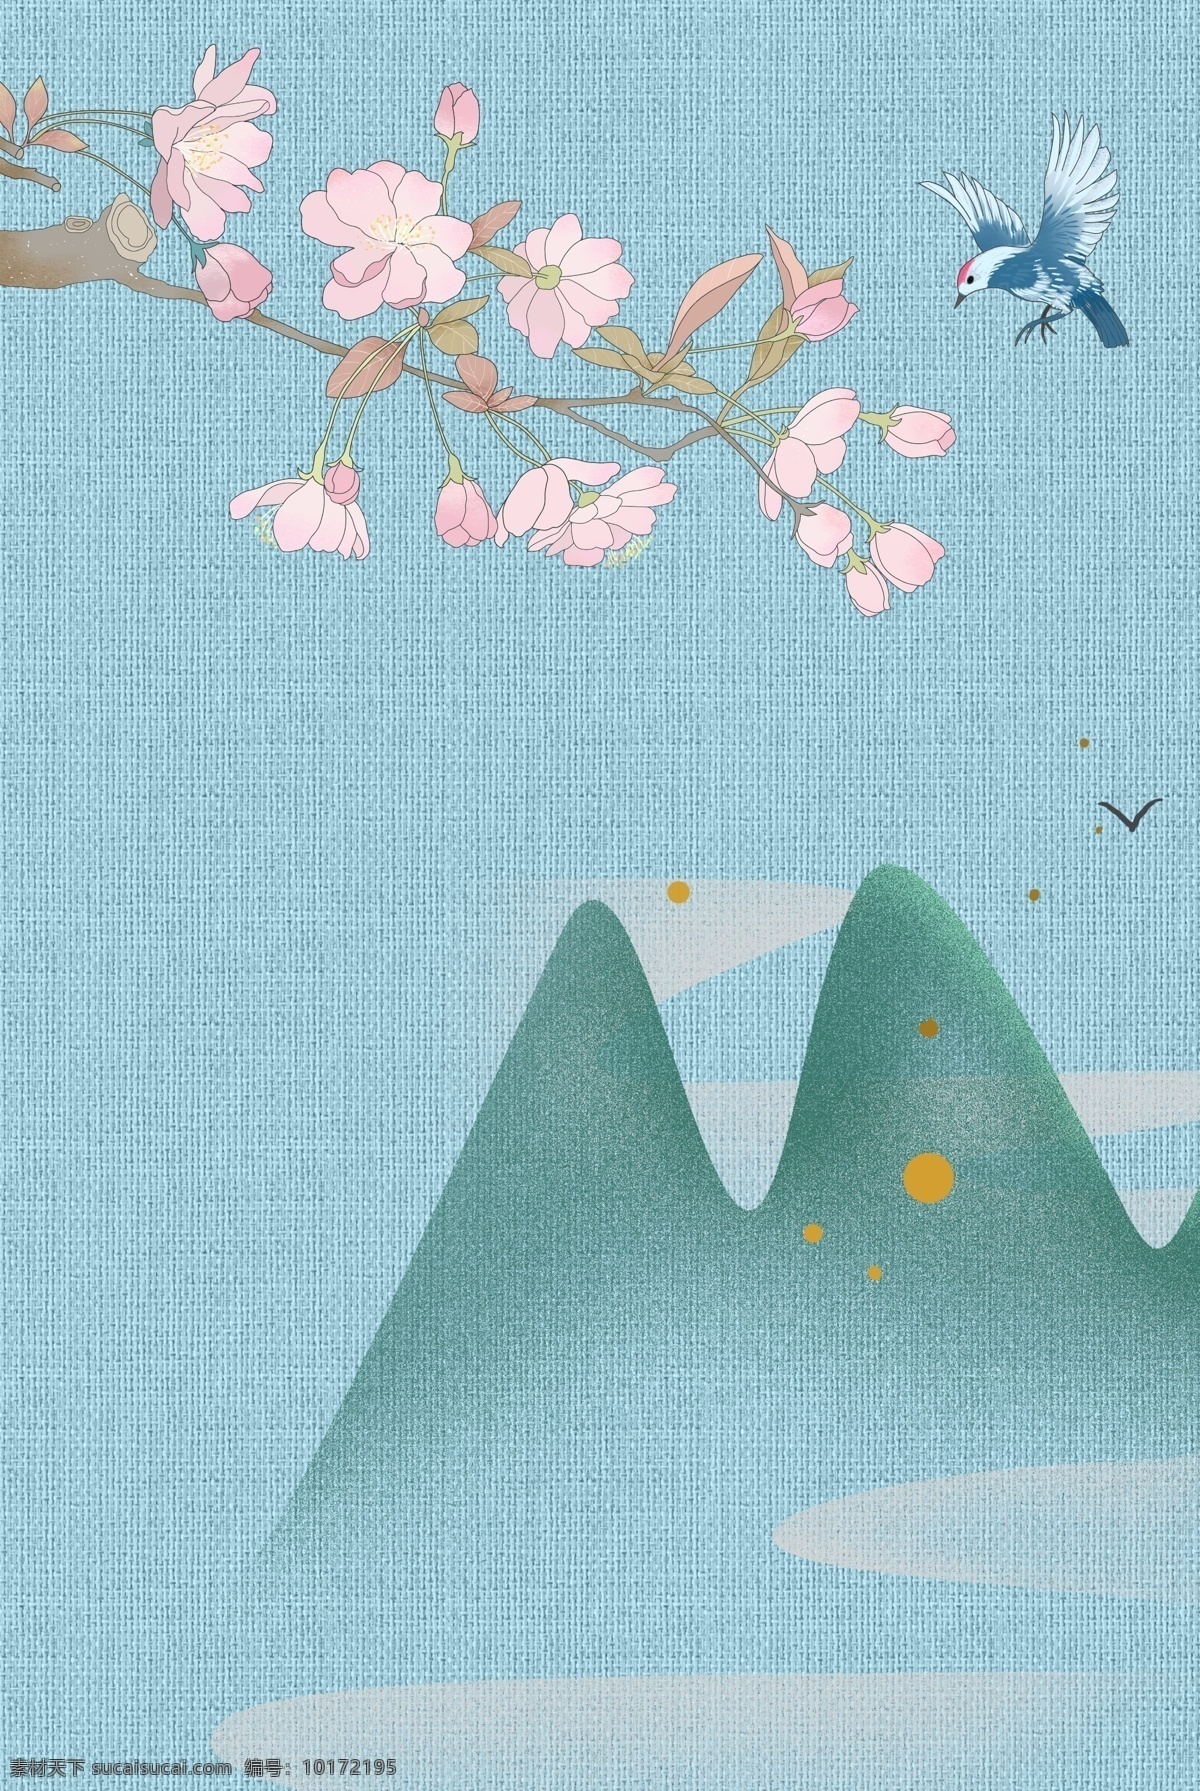 古典 中国 风 工笔画 古风 背景 海报 花朵 远山 海报背景模板 传统海报 手绘 中式海报背景